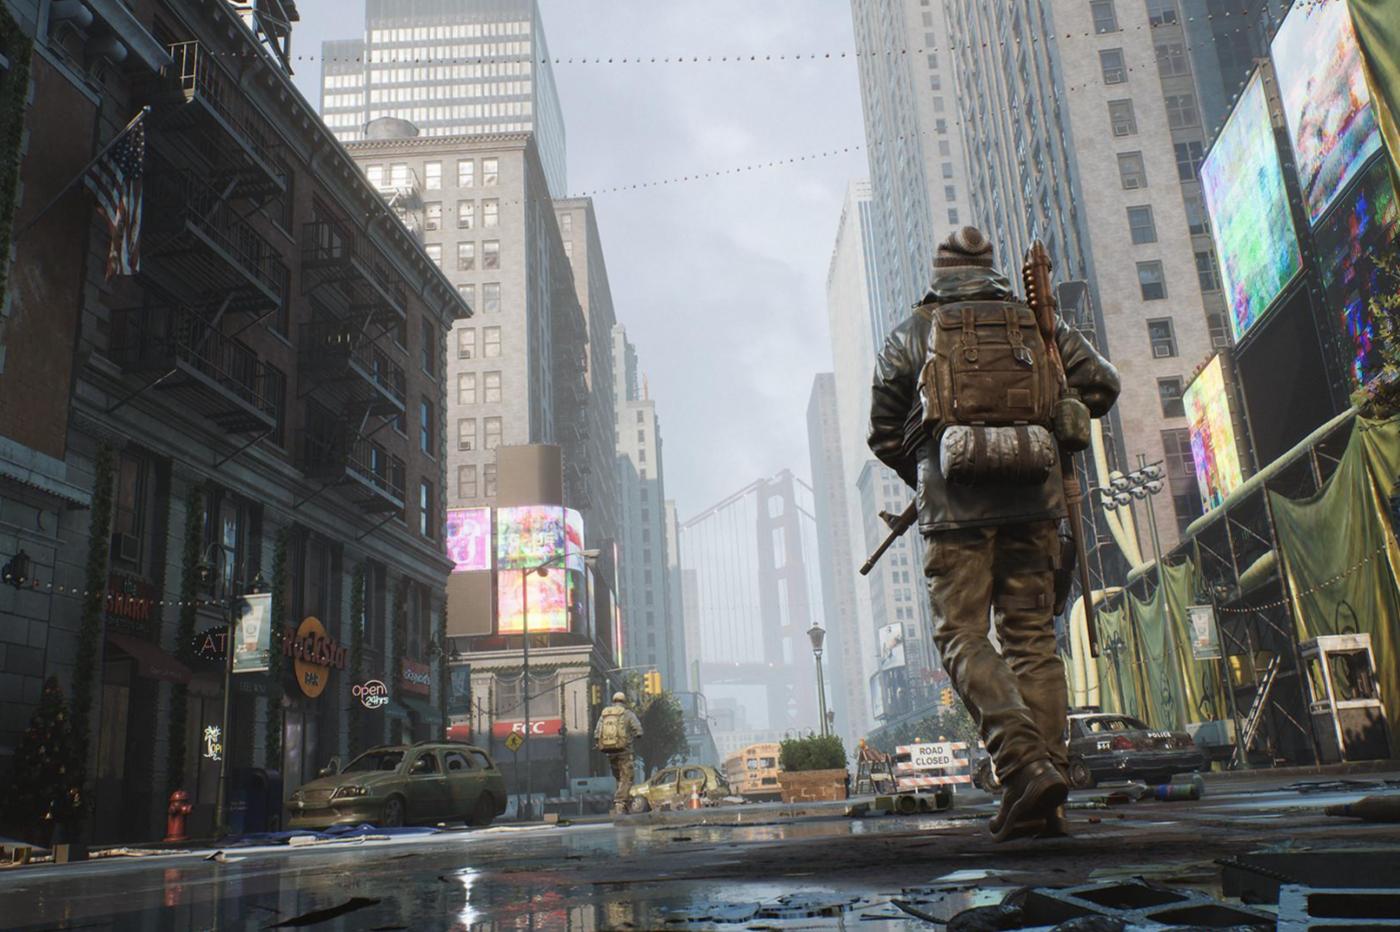 Capture d'écran du jeu The Day Before montrant un personnage armé dans une ville abandonnée